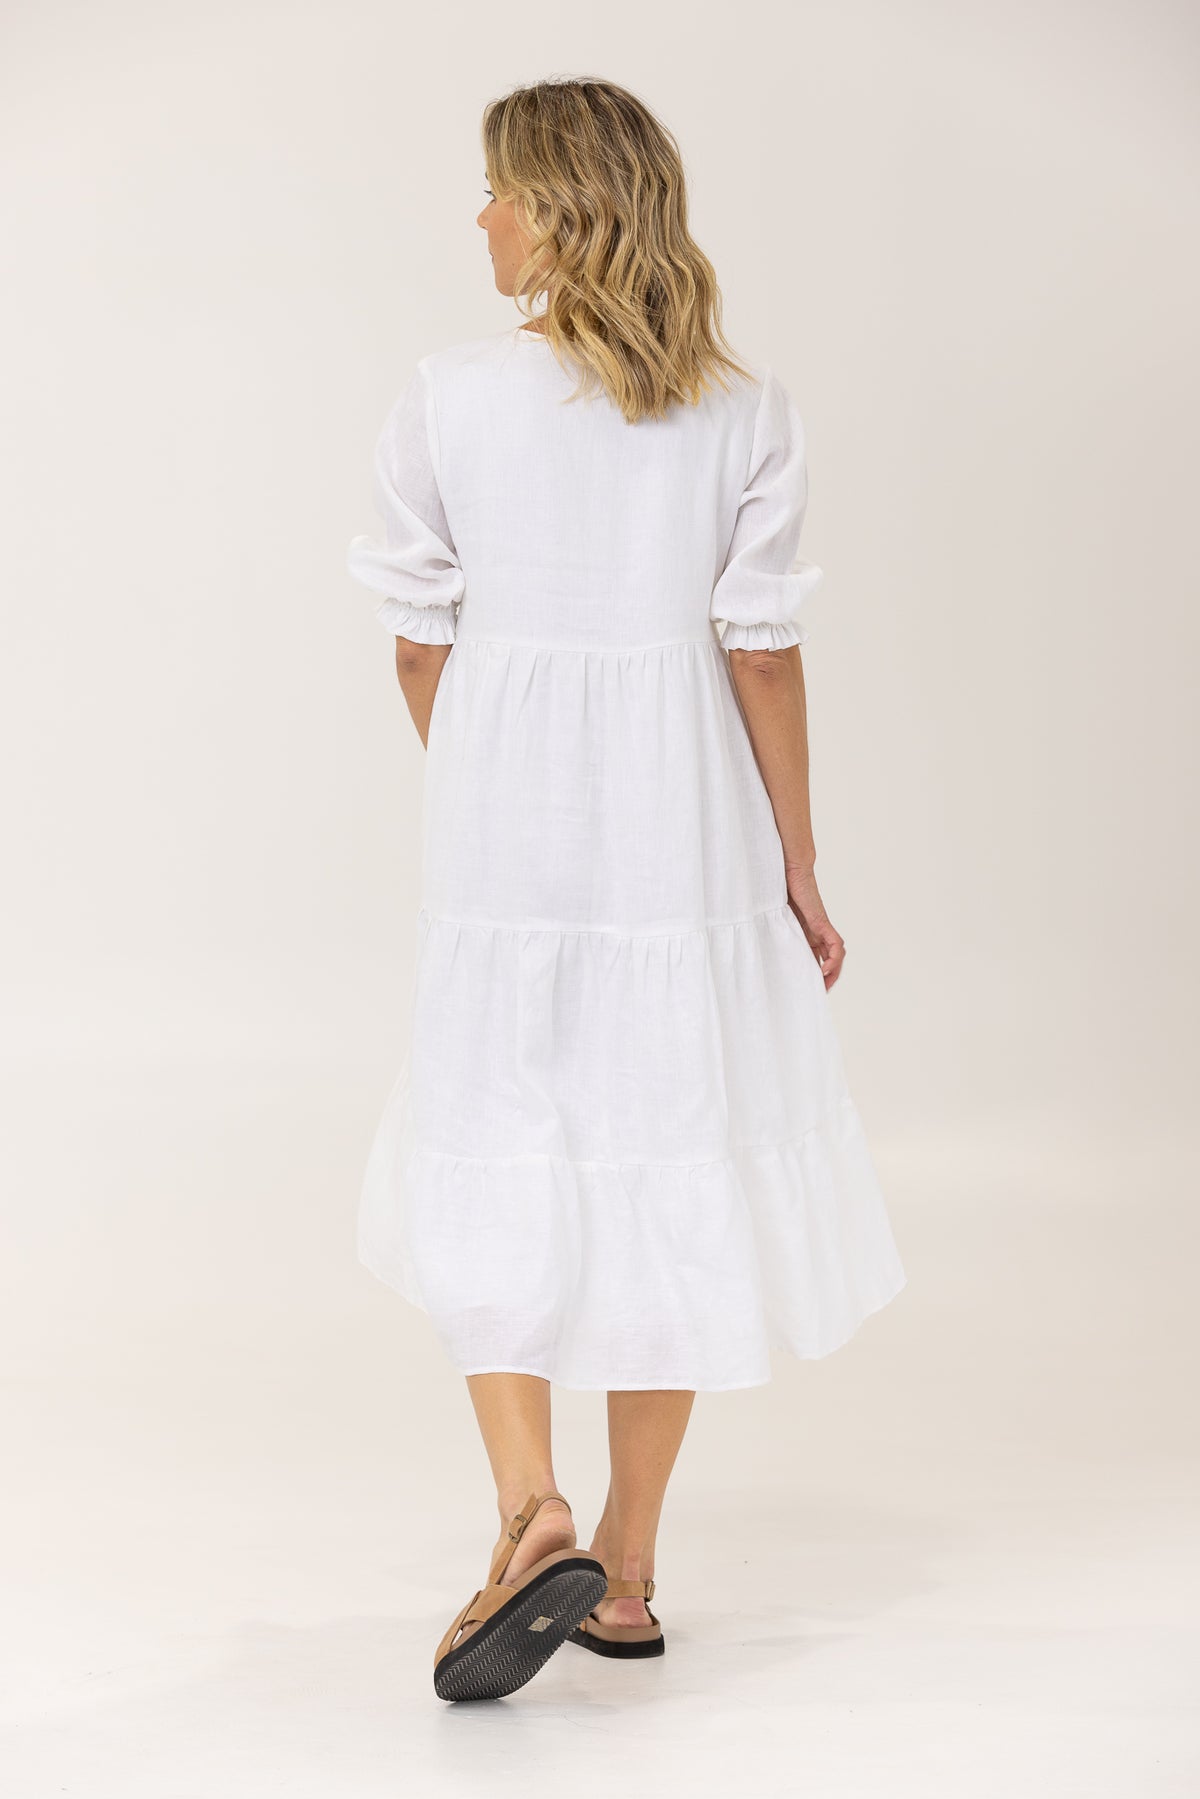 ALLEGRA LINEN DRESS - WHITE